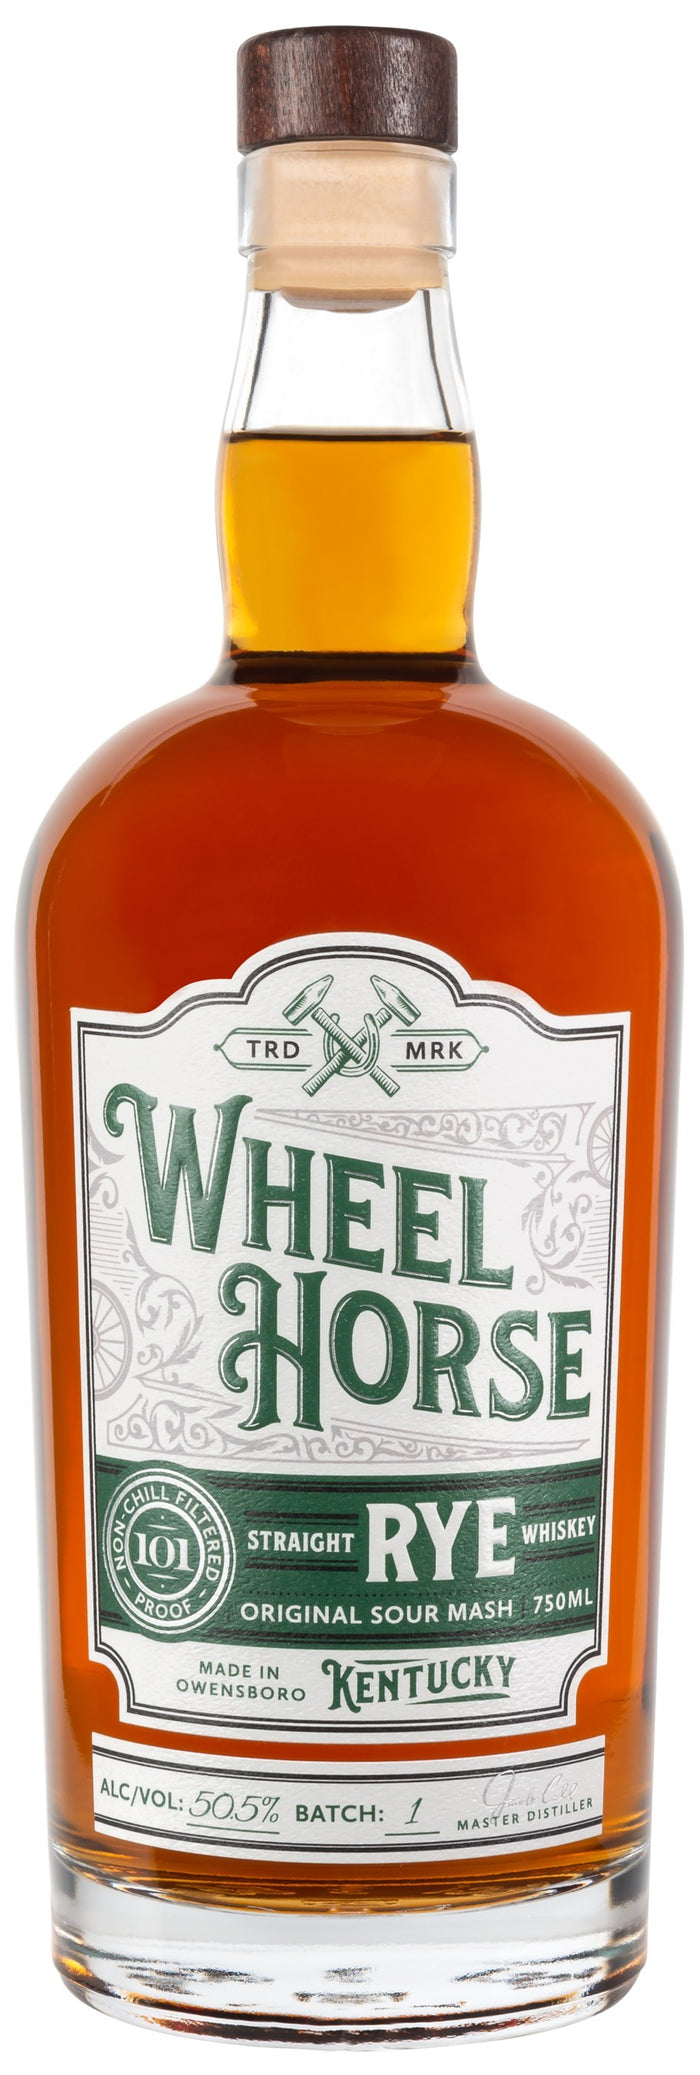 Wheel Horse Batch 1 Rye Whiskey